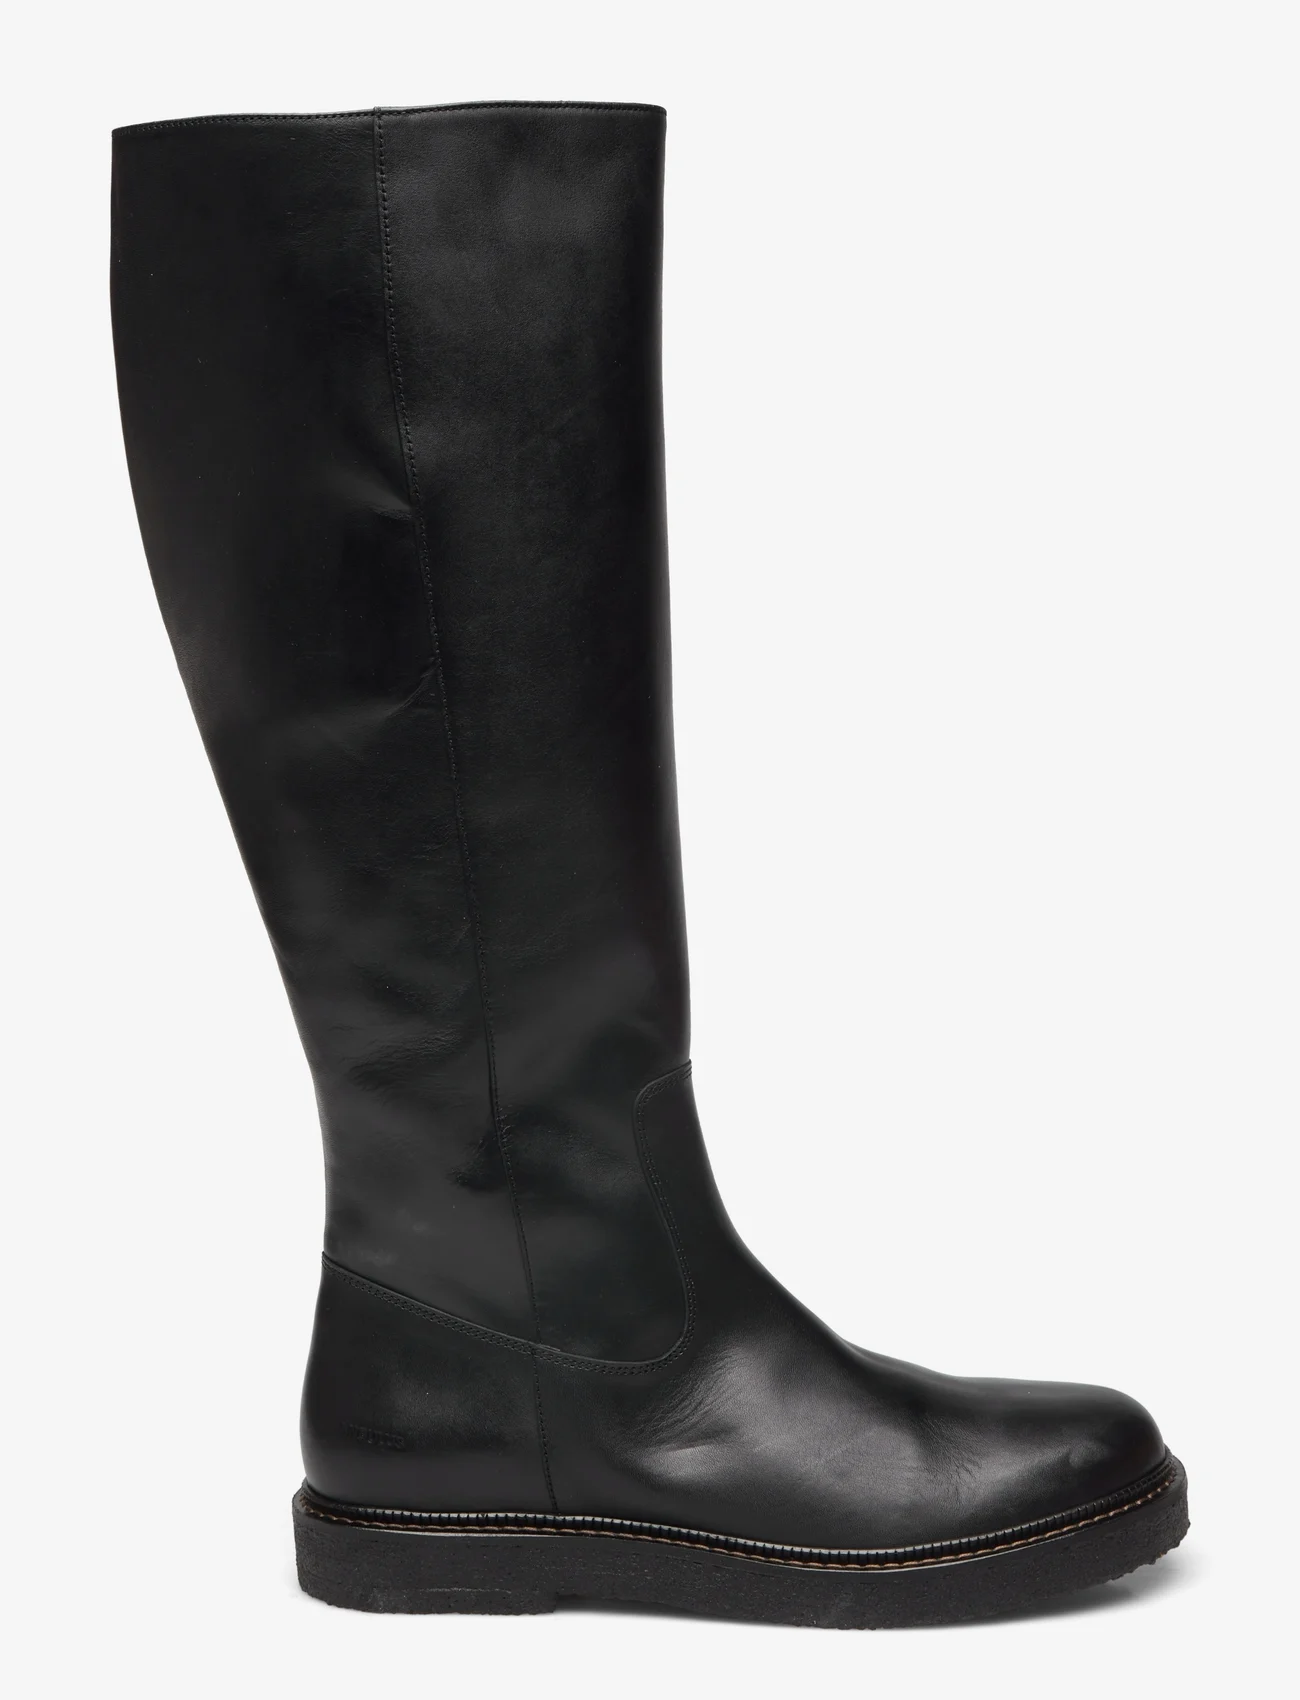 ANGULUS - Boots - flat - pika säärega saapad - 1604/001 black/black - 1